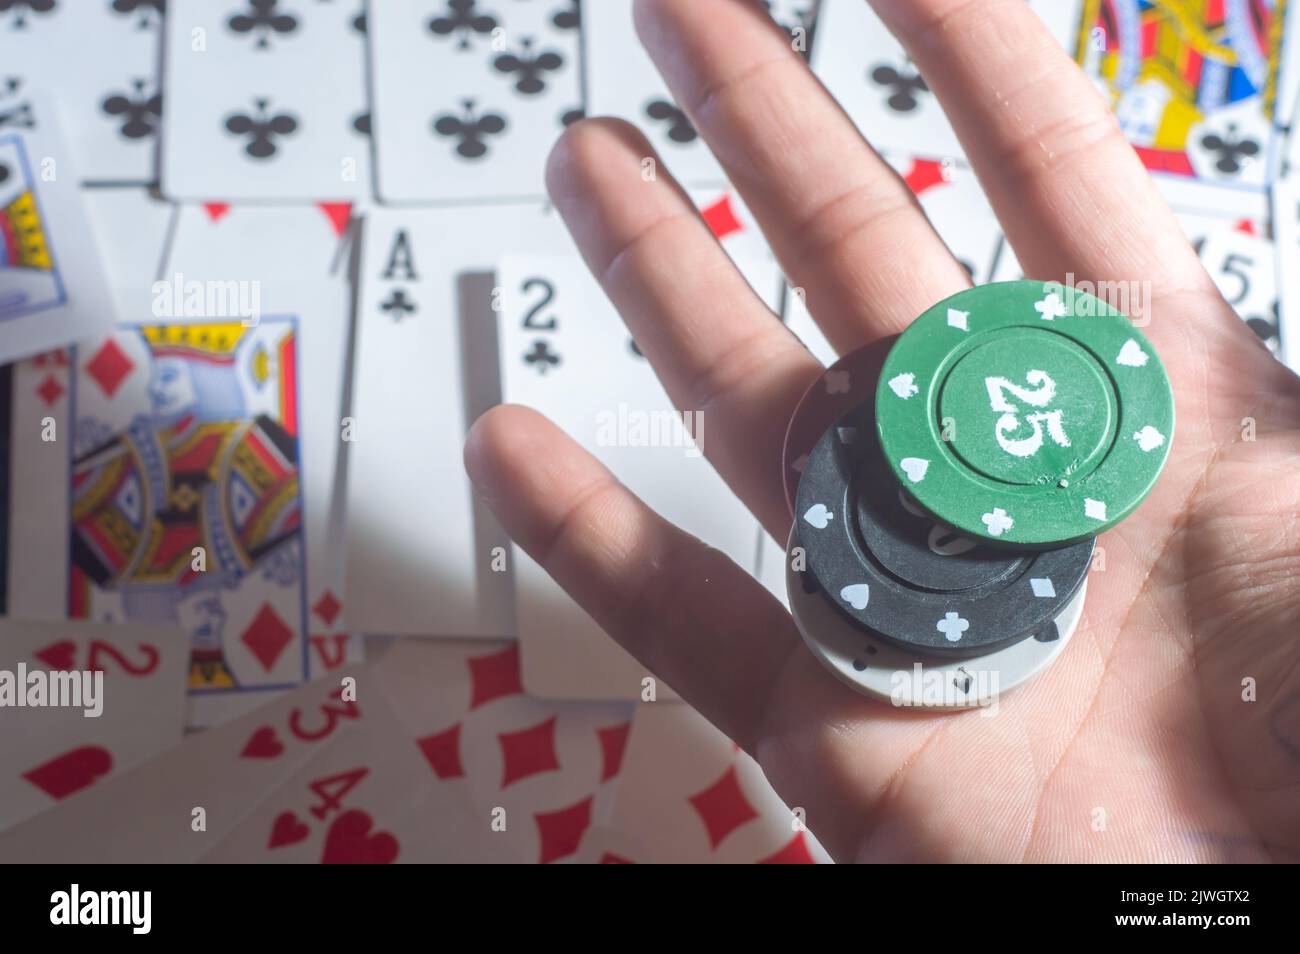 Casino Karten Poker Blackjack, Hand hält Pokerchips mit Kopierraum und Deck Karte Hintergrund. Stockfoto